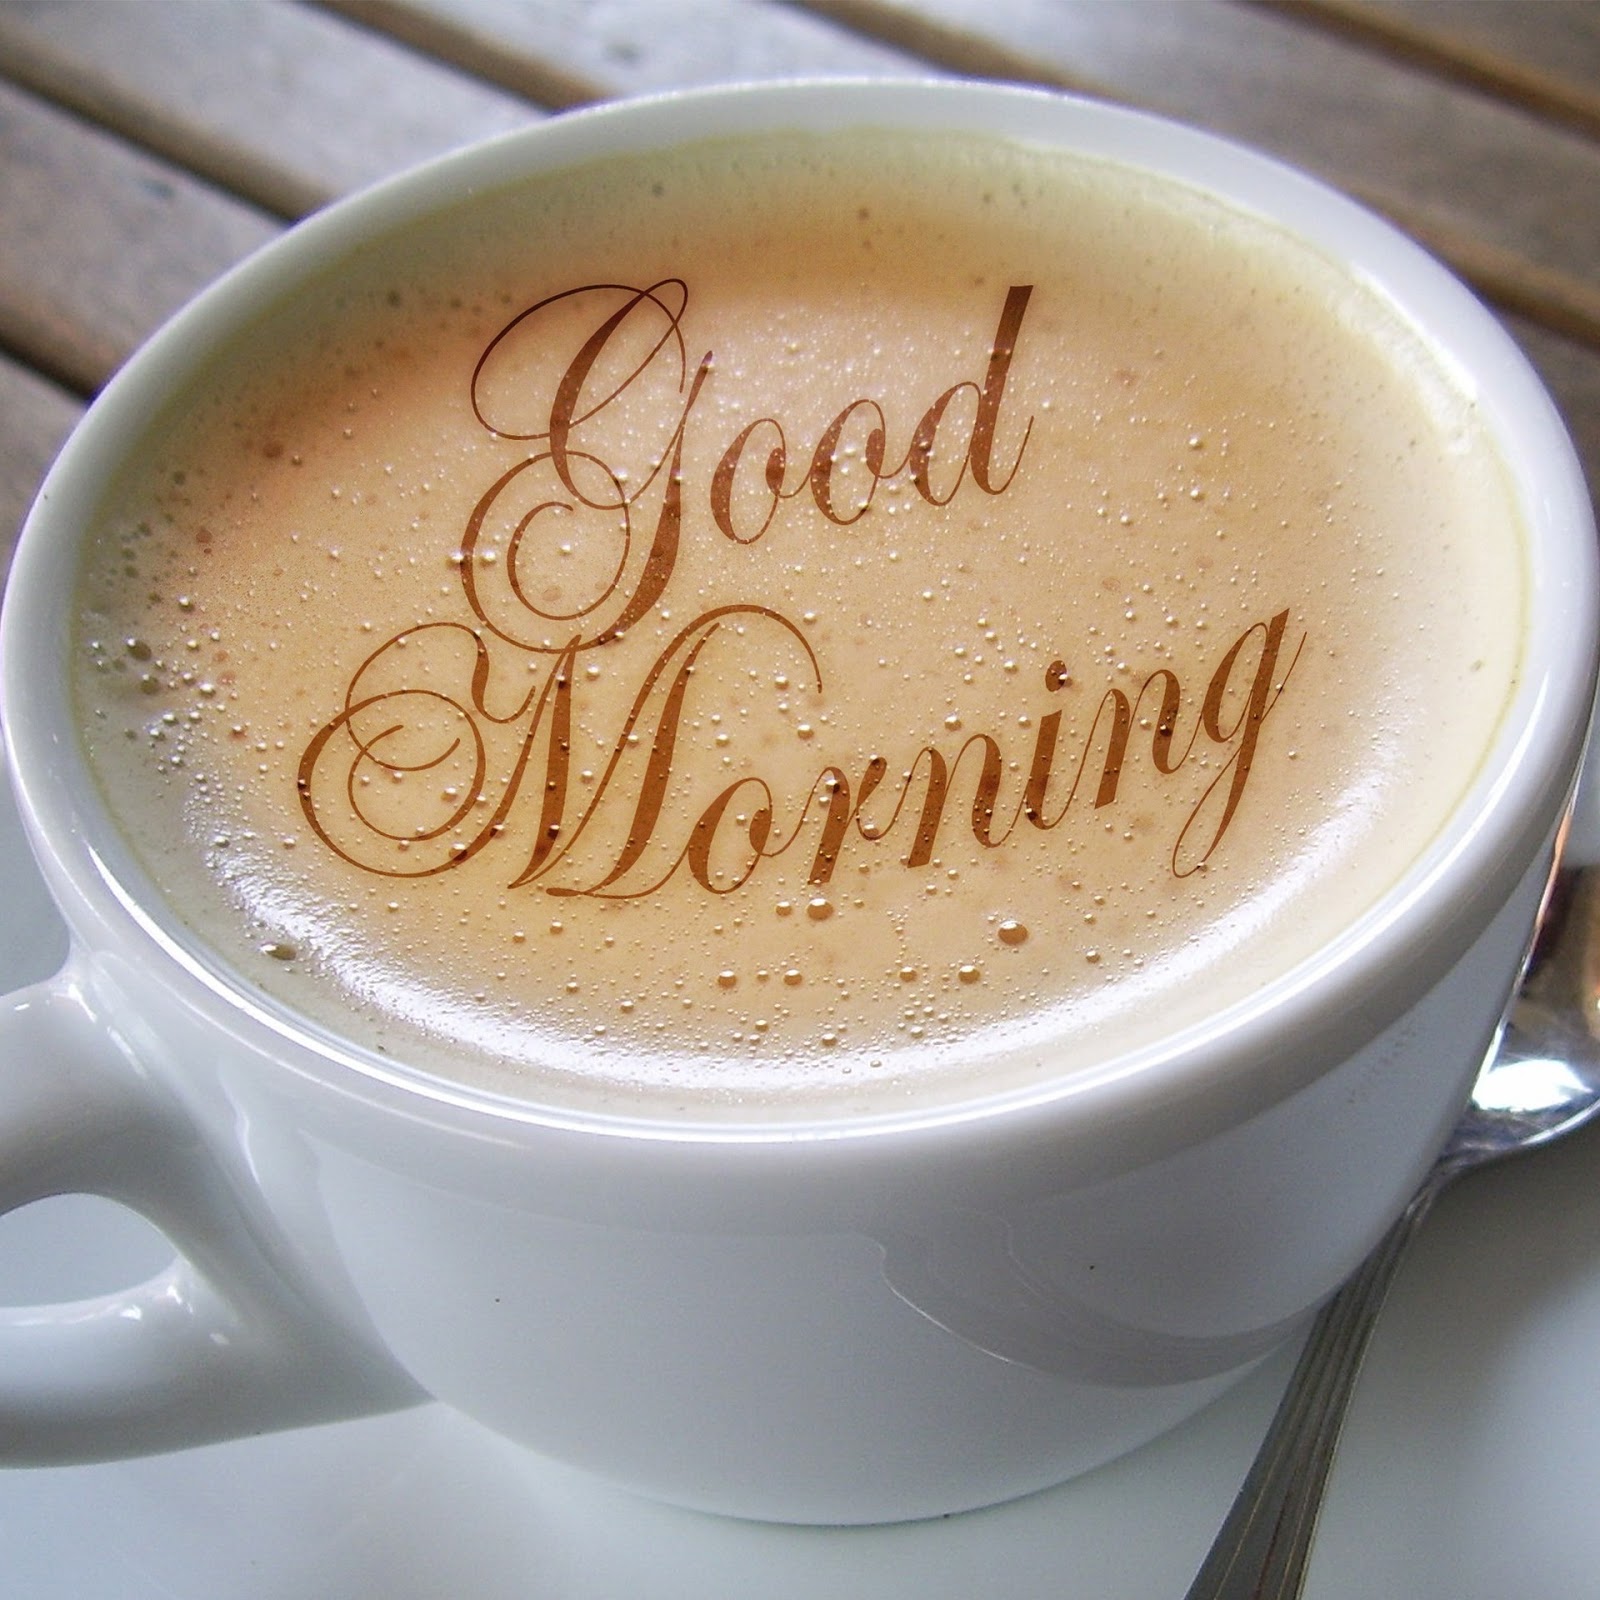 whatsappのおはよう壁紙,カップ,ホワイトコーヒー,コーヒーカップ,コーヒーミルク,カップ